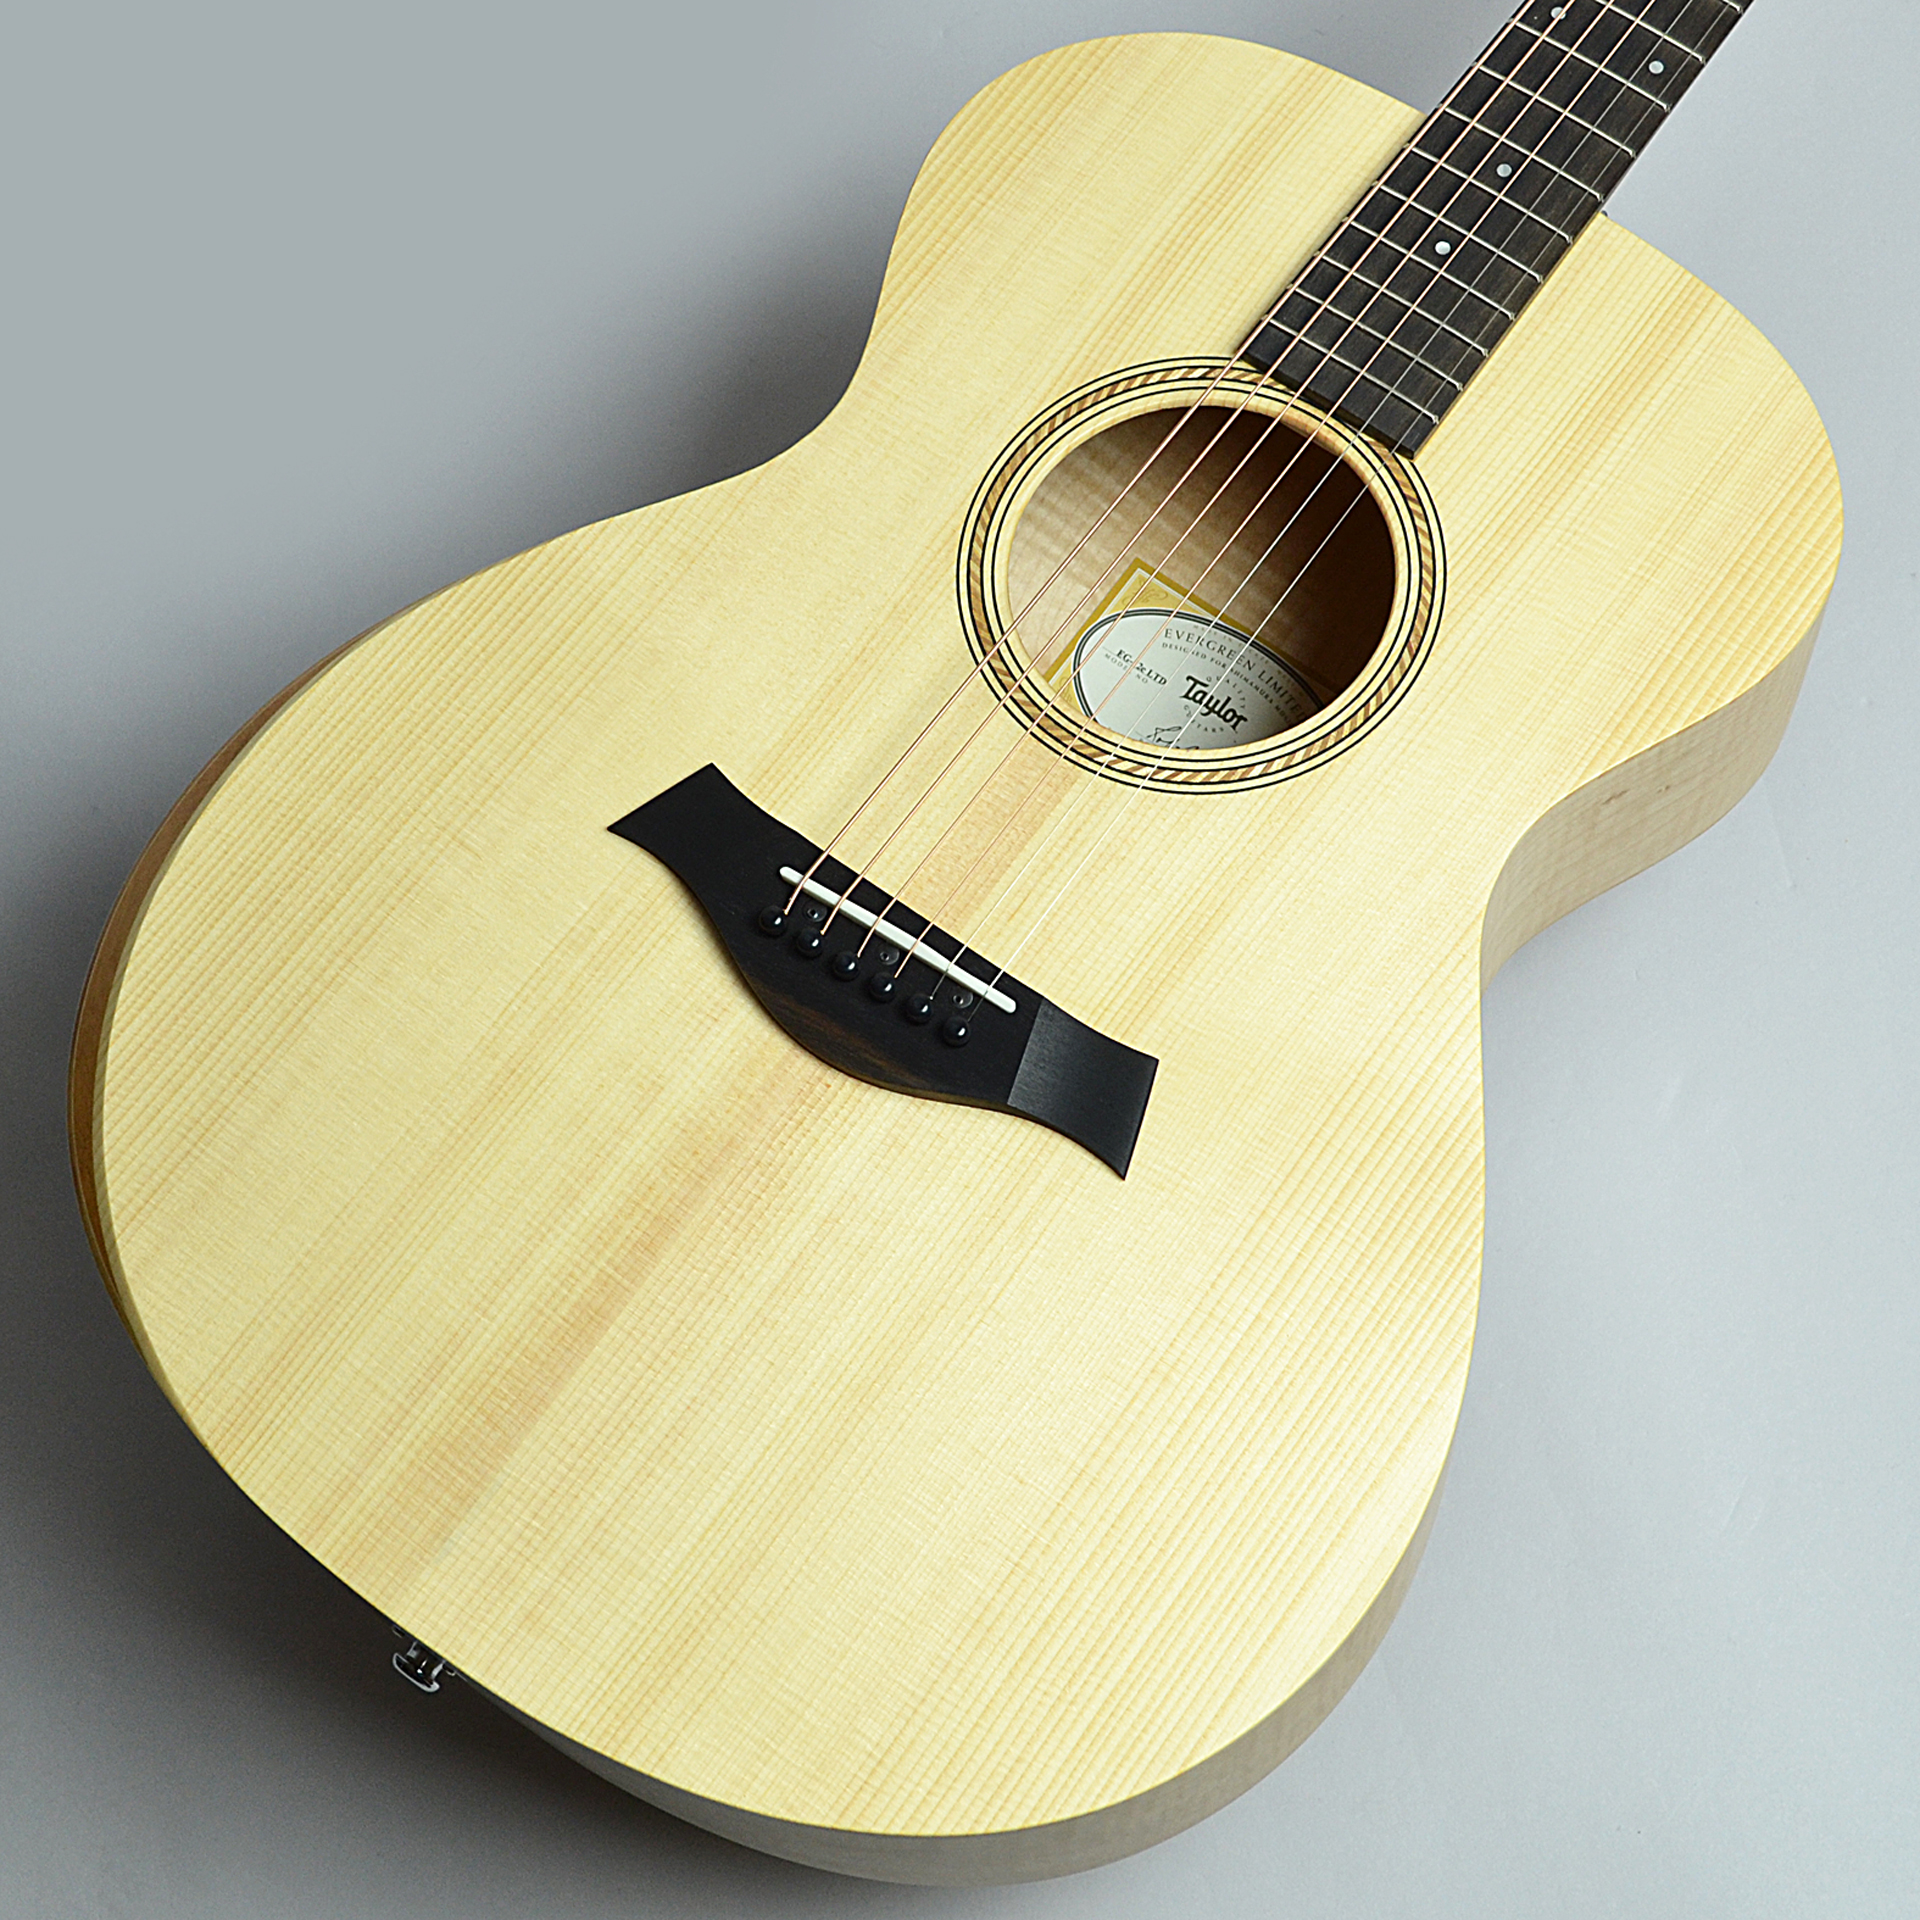 「Taylor Guitars」と島村楽器のコラボレーションでサステナブルな木材を使用した限定モデル『LTD EG Academy 12e』が登場しました！]]テイラー社のメキシコ工場にて生産される、世界初のディーラーオリジナルモデルをご紹介します。 *Taylor『LTD EG Academy 1 […]